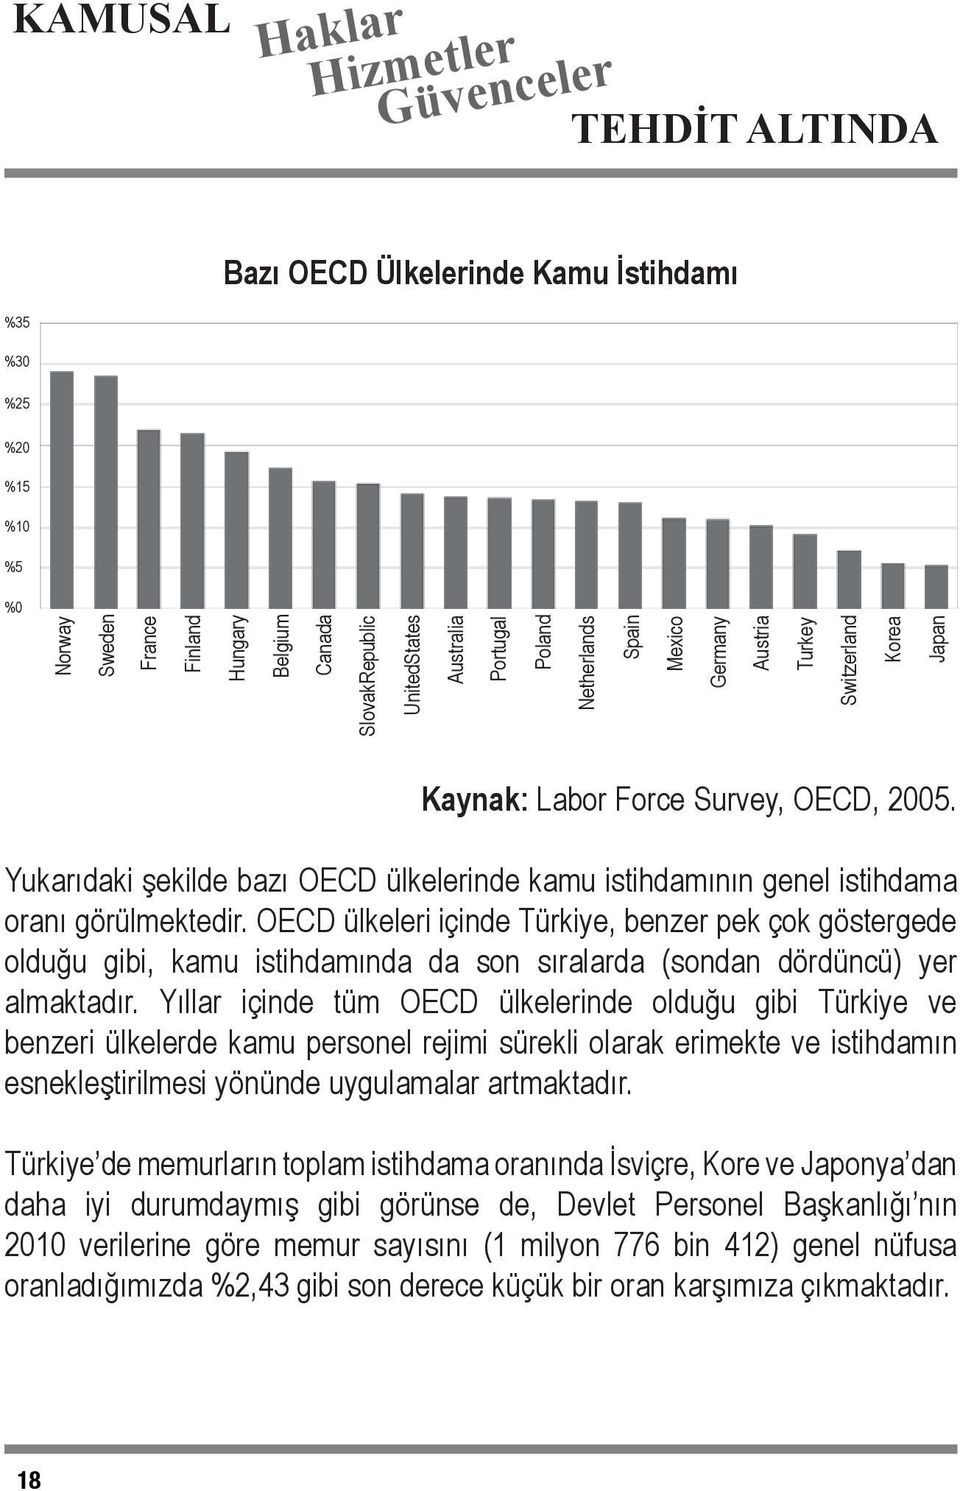 OECD ülkeleri içinde Türkiye, benzer pek çok göstergede olduğu gibi, kamu istihdamında da son sıralarda (sondan dördüncü) yer almaktadır.